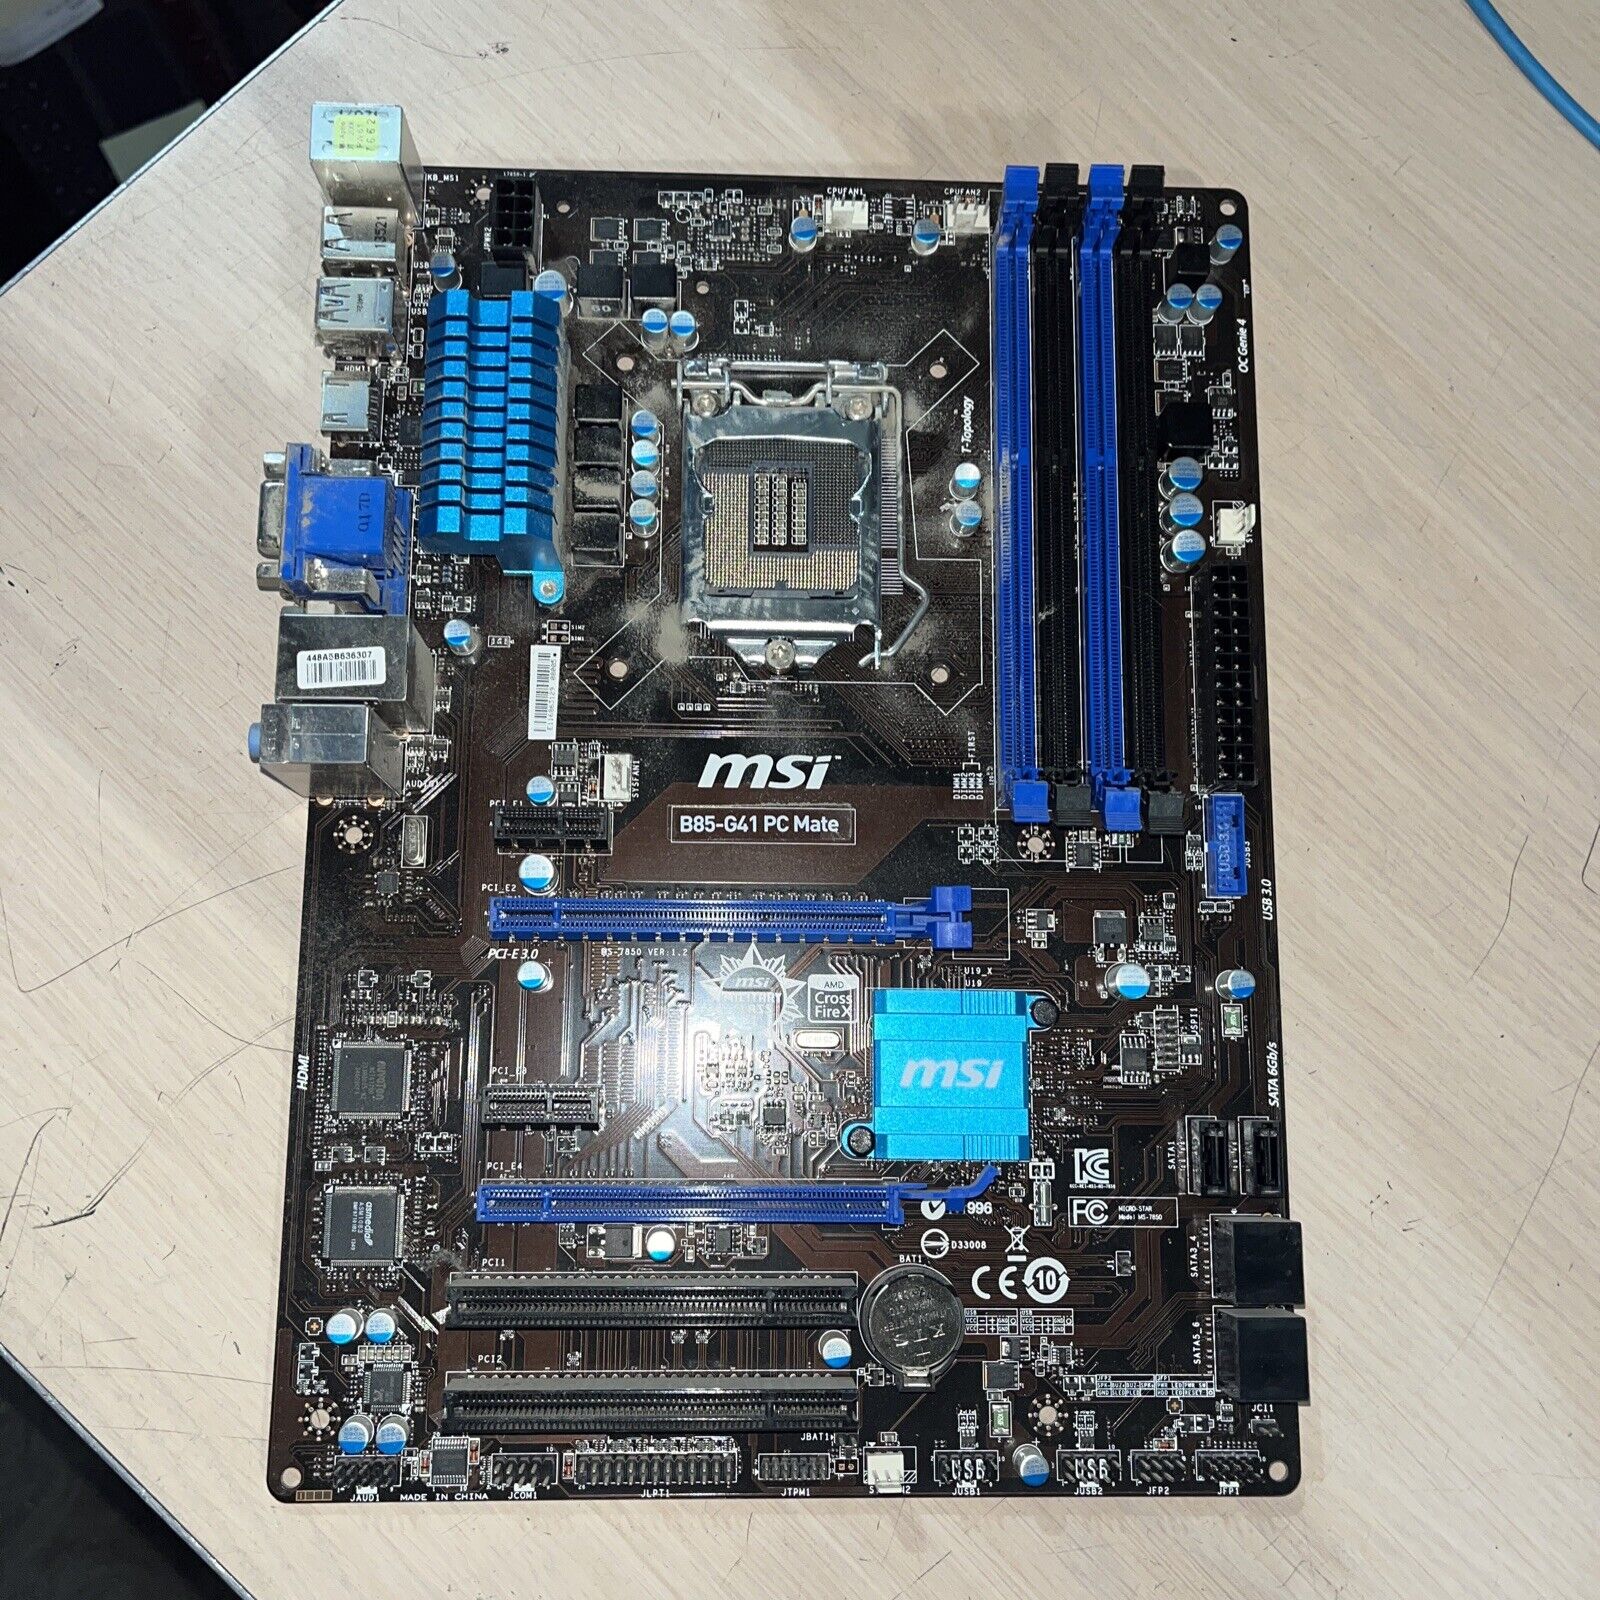 MSI B85-G41 PC MATE MOTHERBOARD